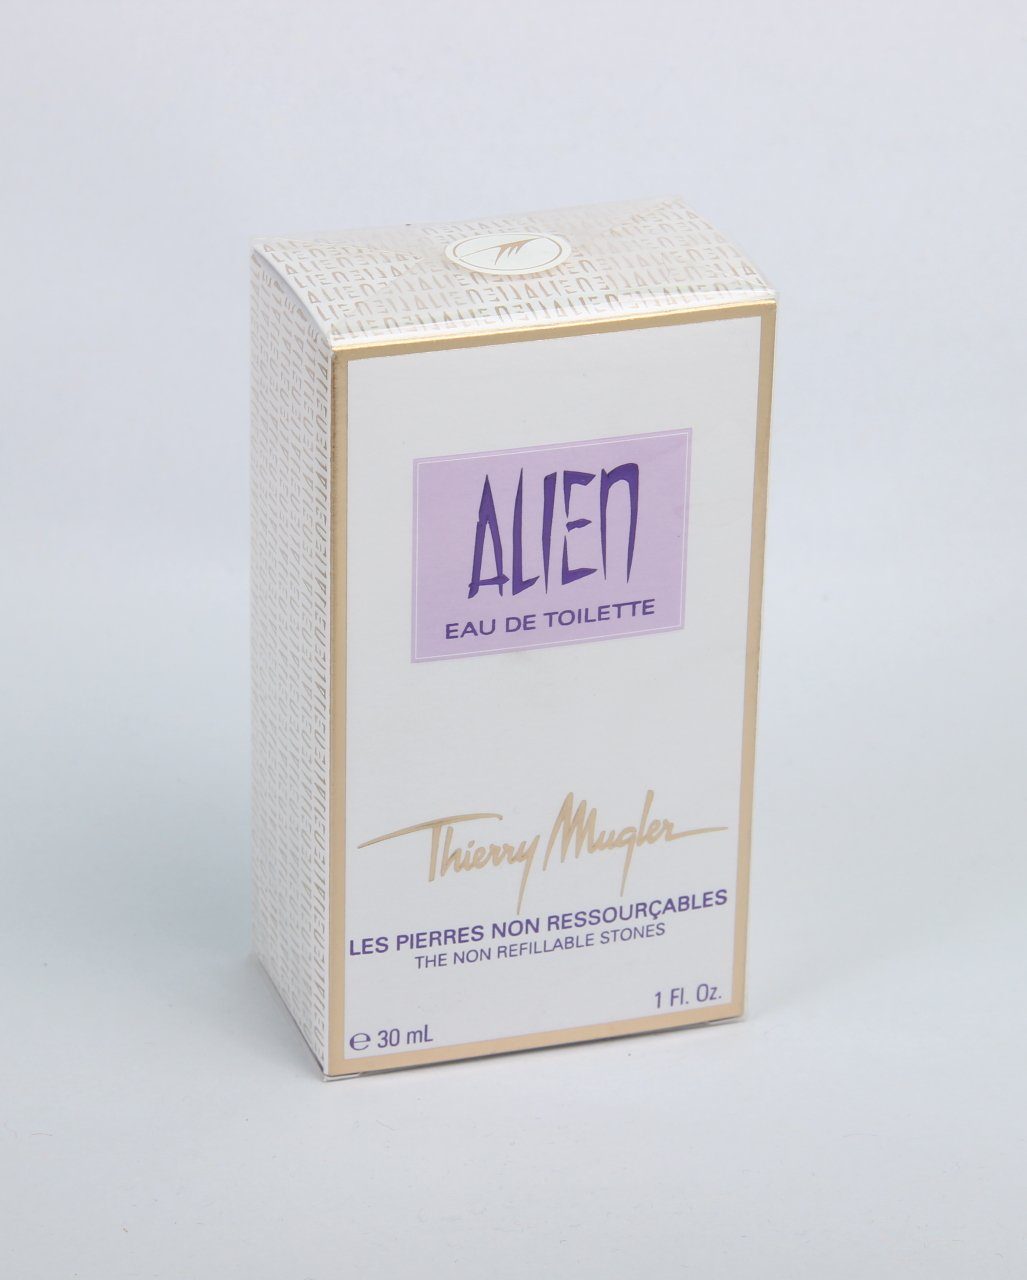 Thierry Mugler Eau de Toilette Thierry Mugler Alien EdT (the non refillable stones) 30ml woman